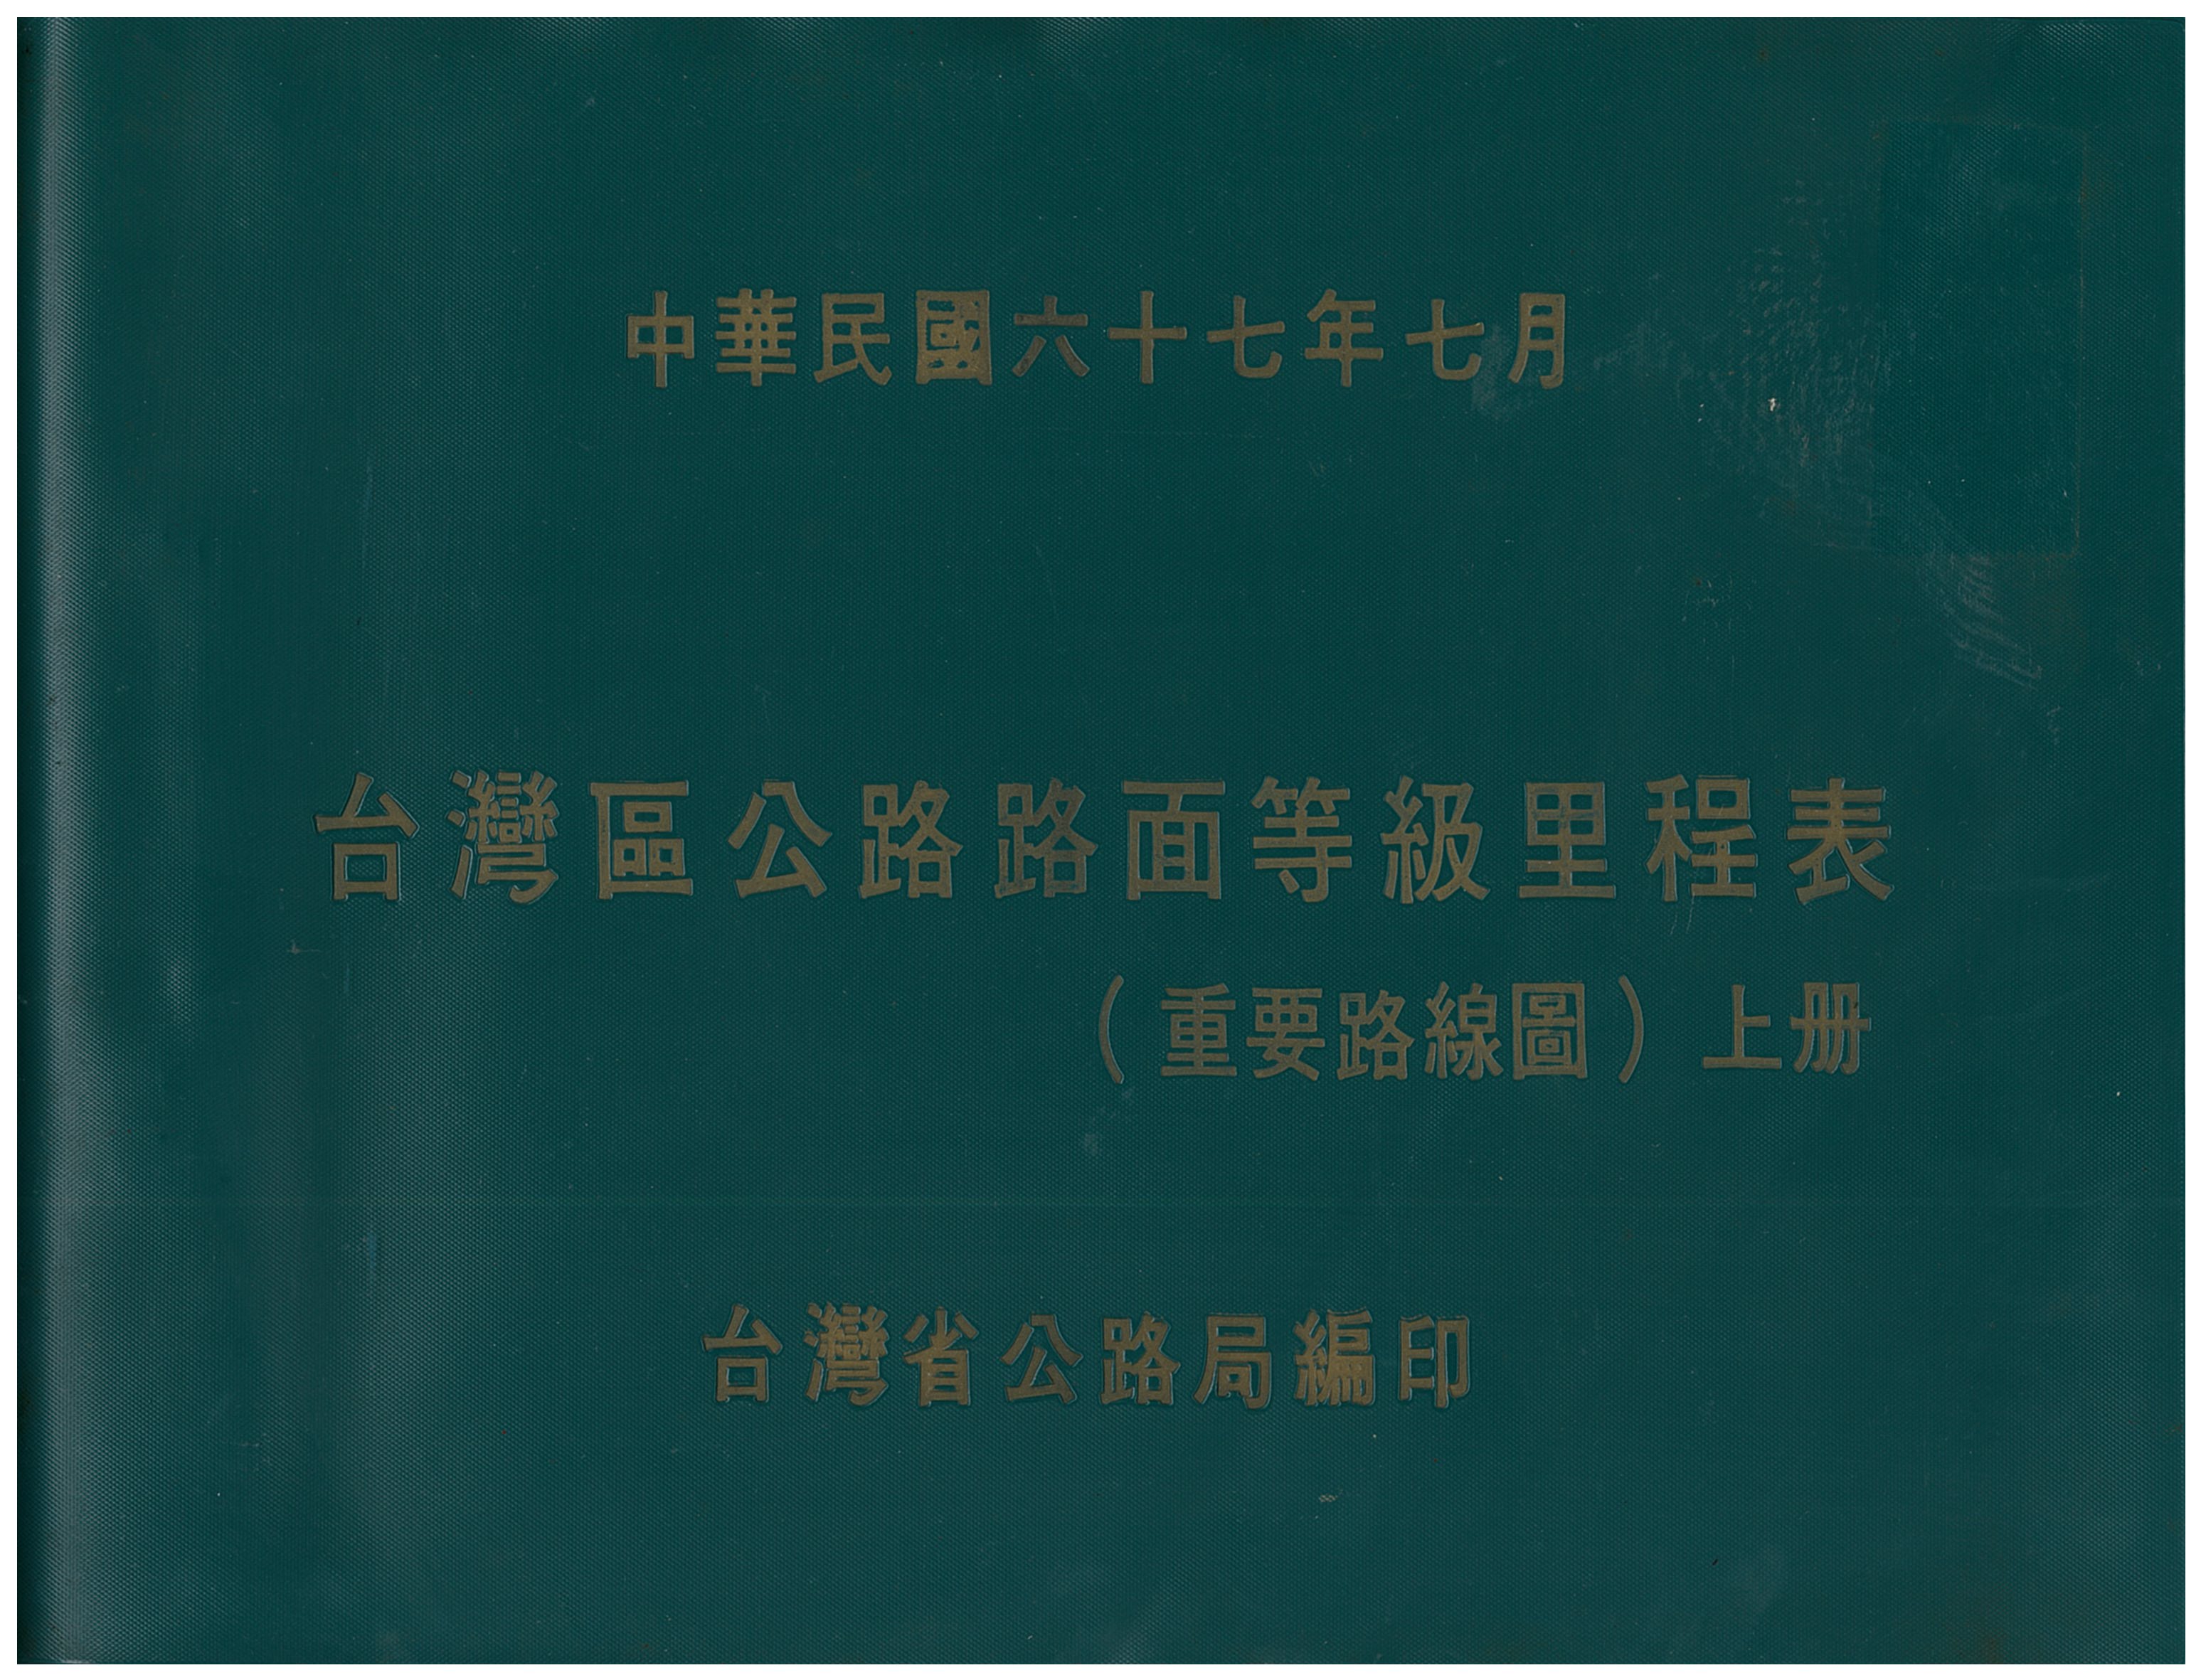 臺灣區公路路面等級里程表(重要路線圖)上冊封面